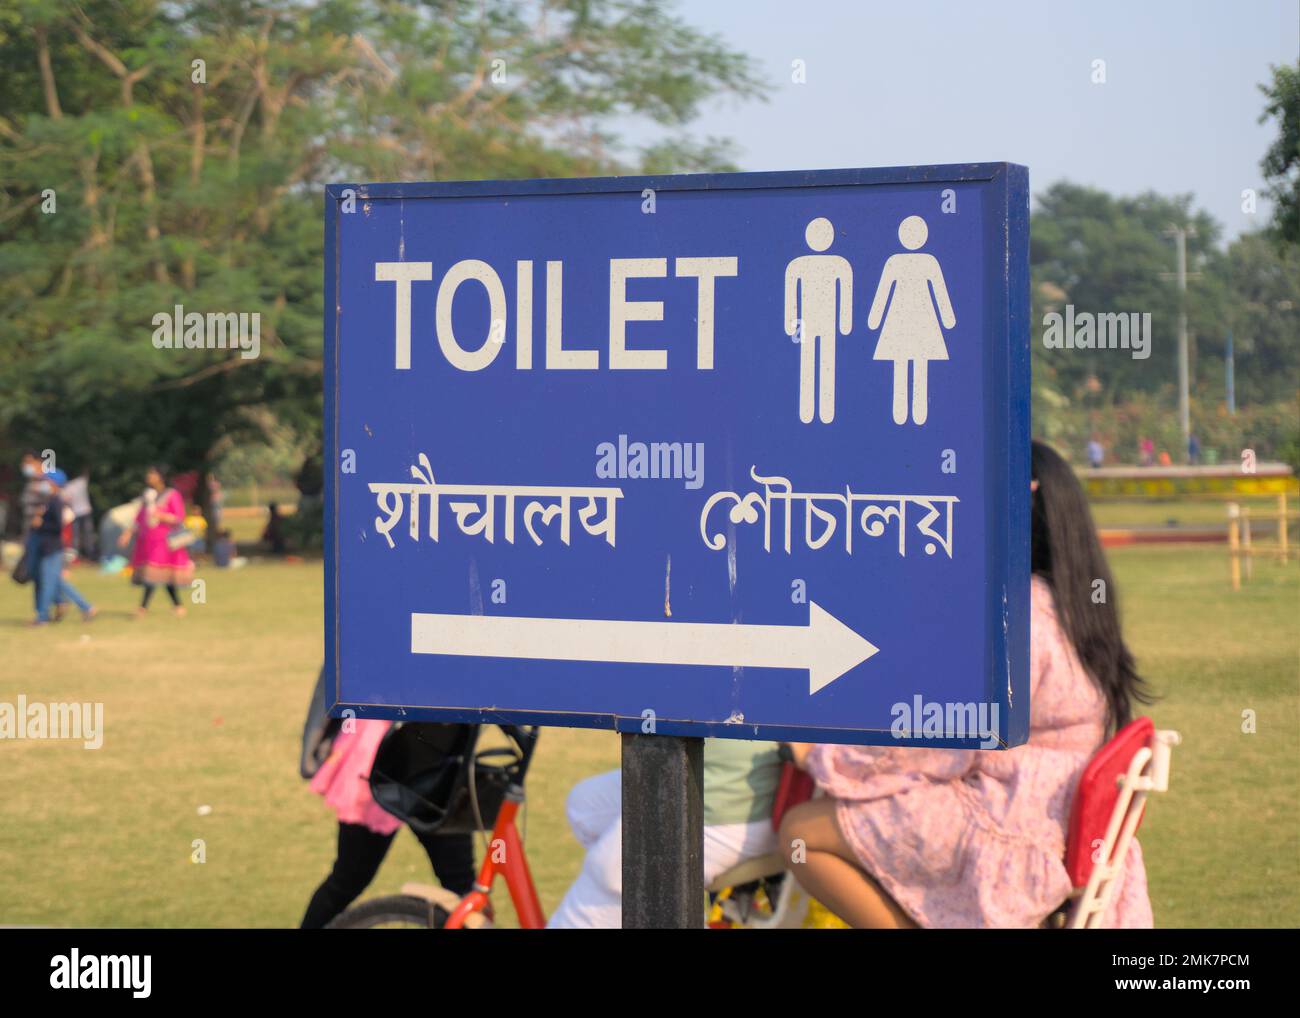 WC-Richtungstafel in drei Sprachen, Englisch, Hindi und Bengalisch, auf einem blauen Schild. Stockfoto